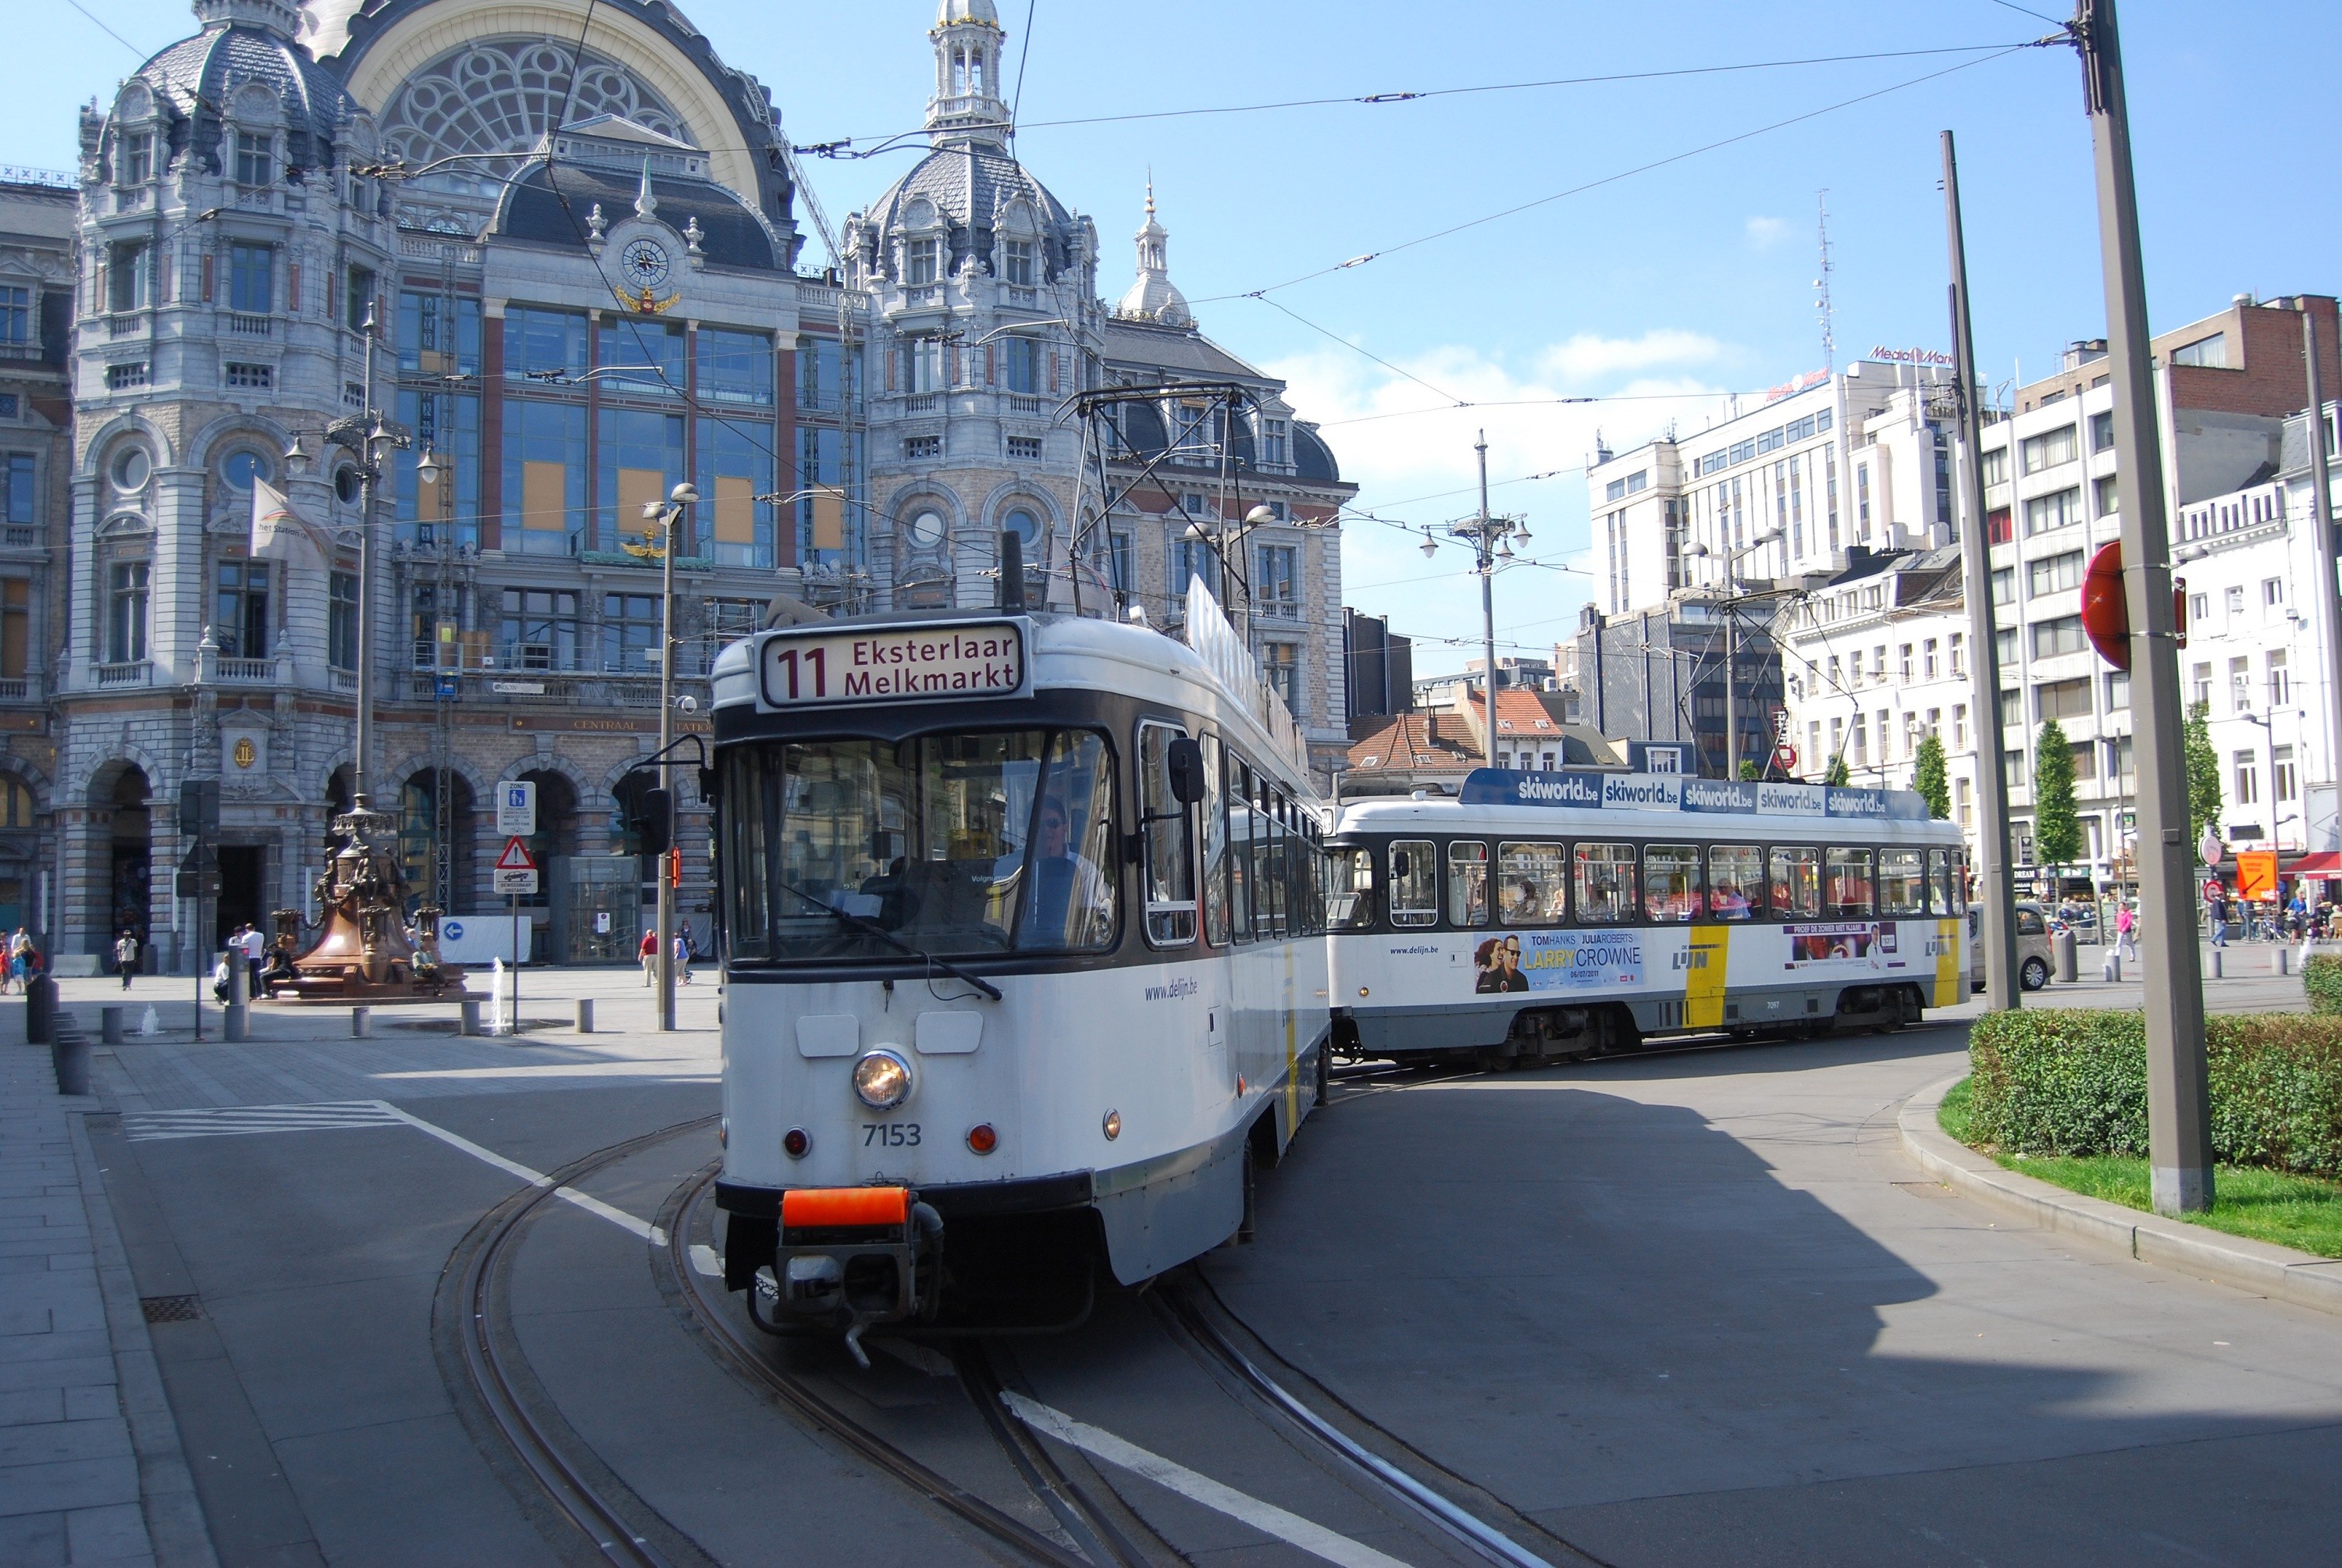 11 Antwerpen-Eksterlaar Antwerpen-Centraal Station